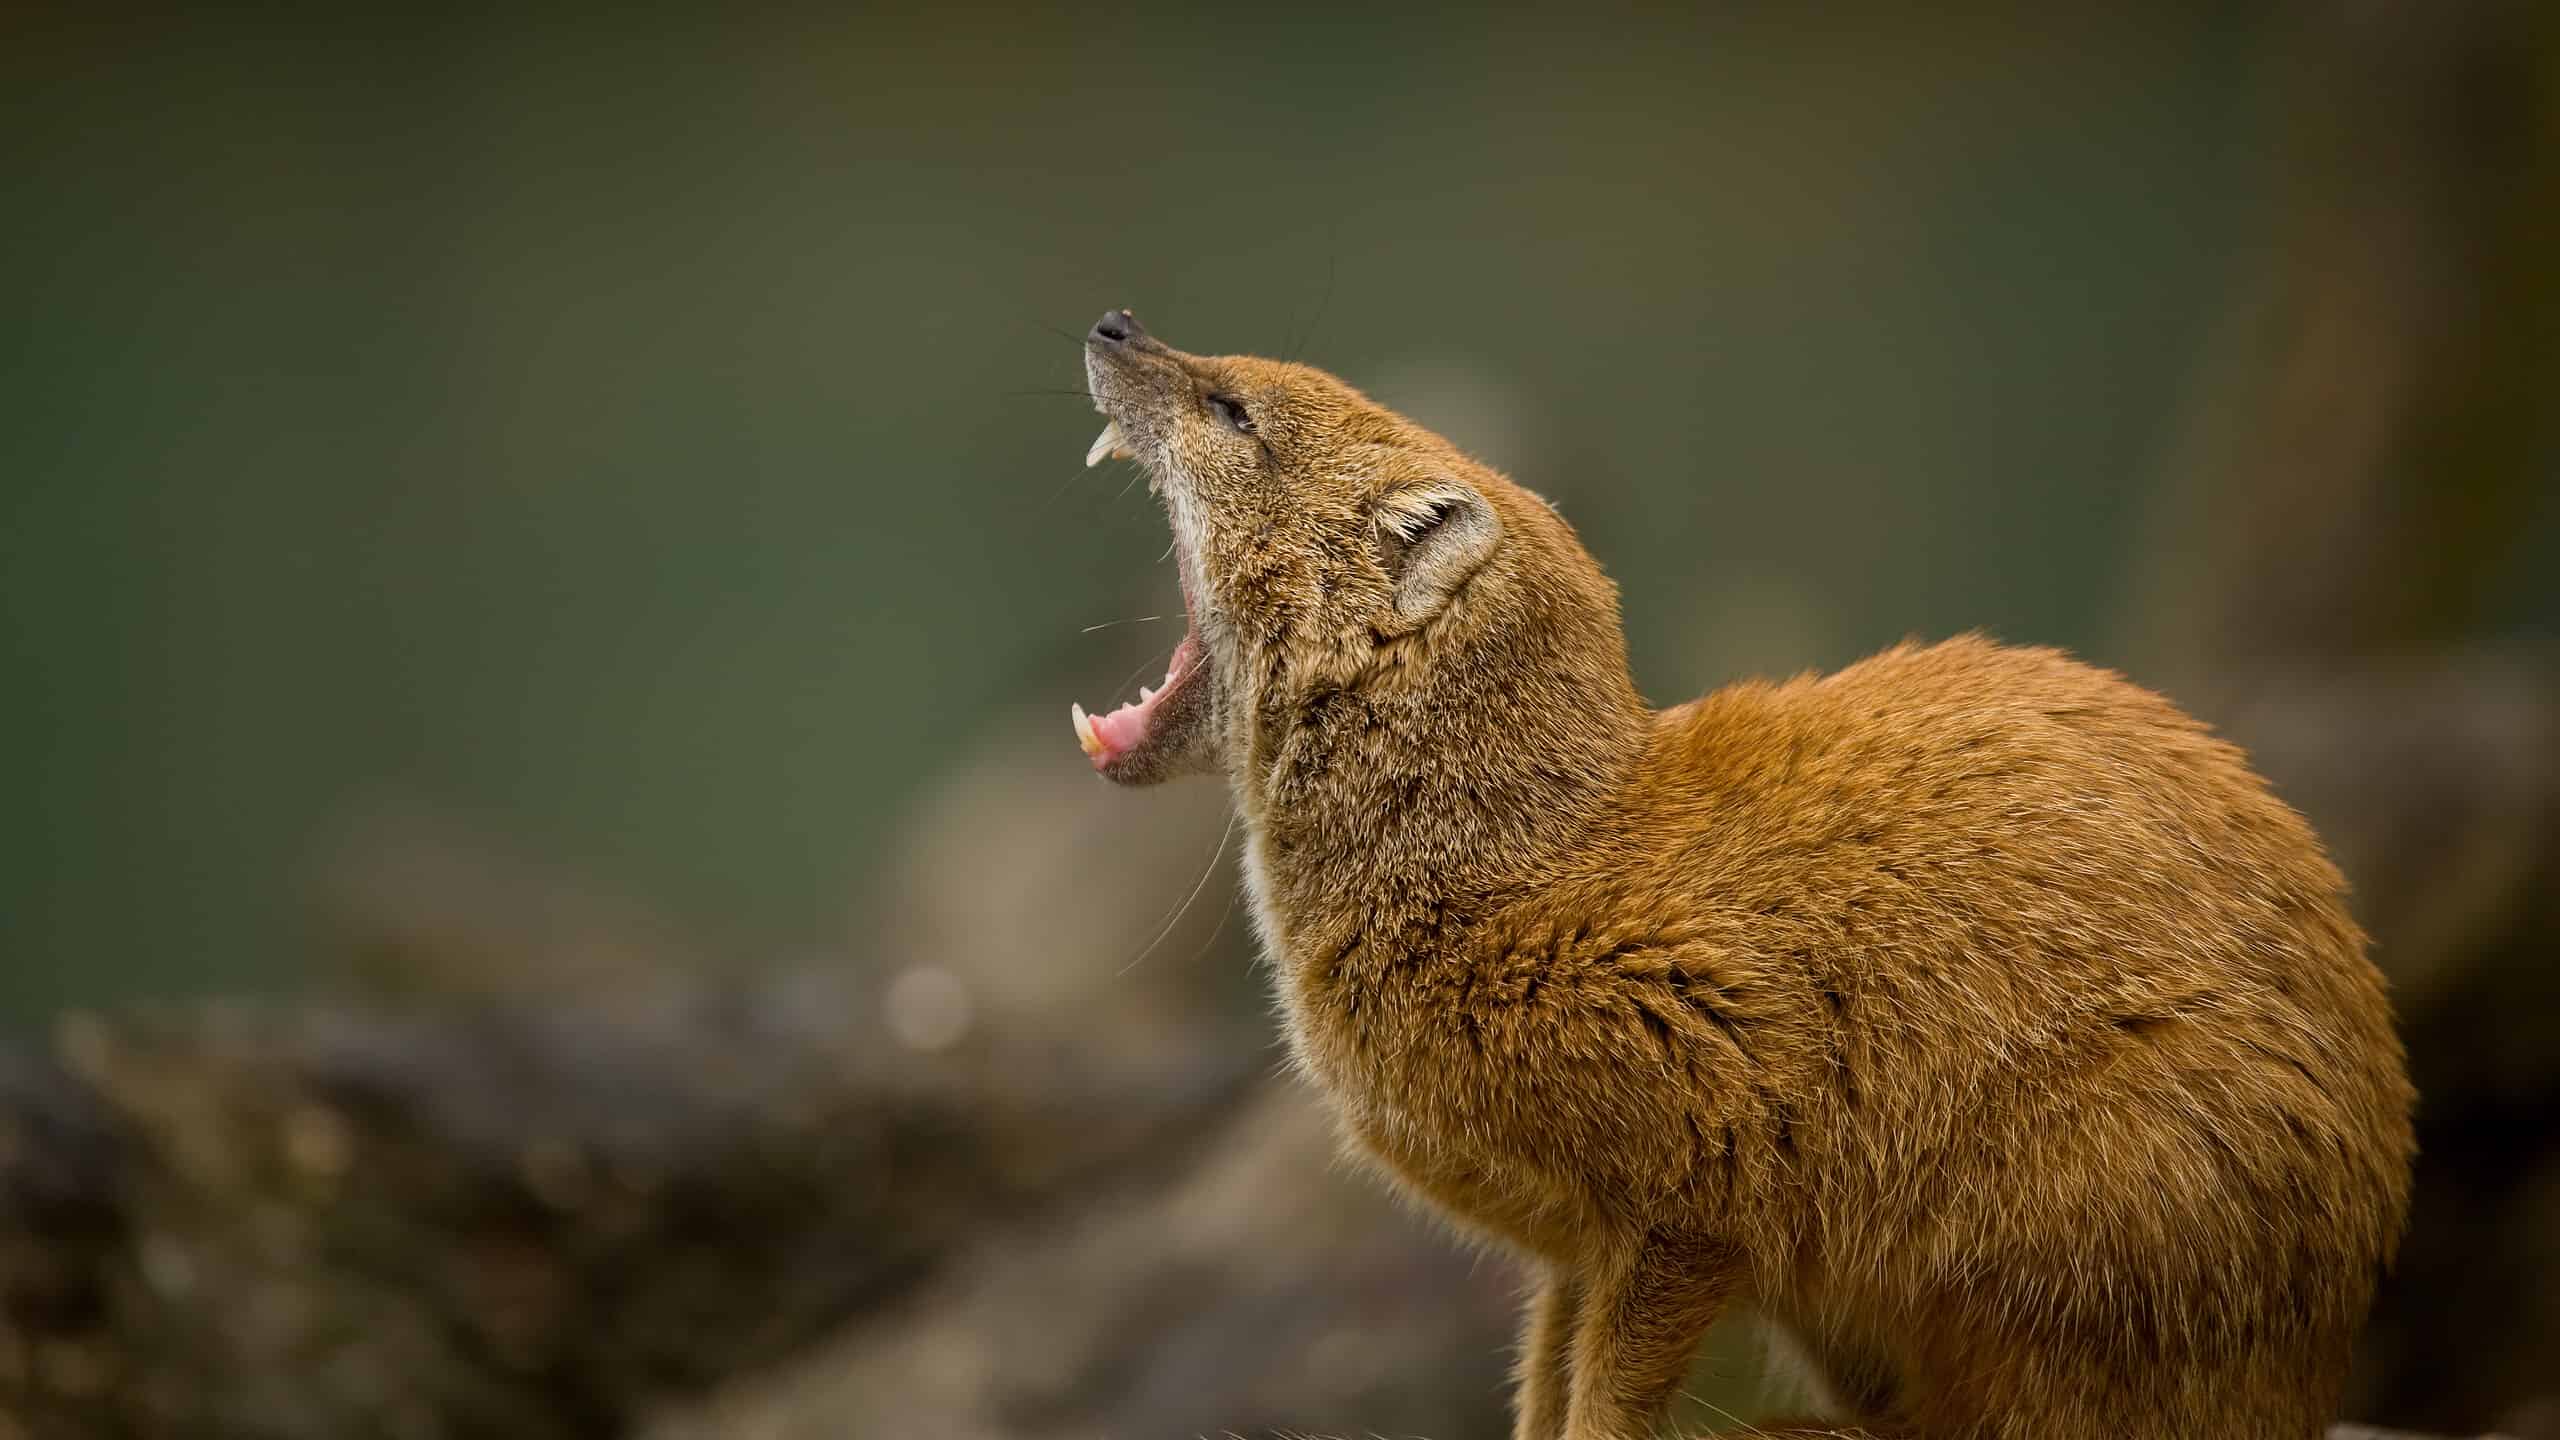 Yellow mongoose yawning